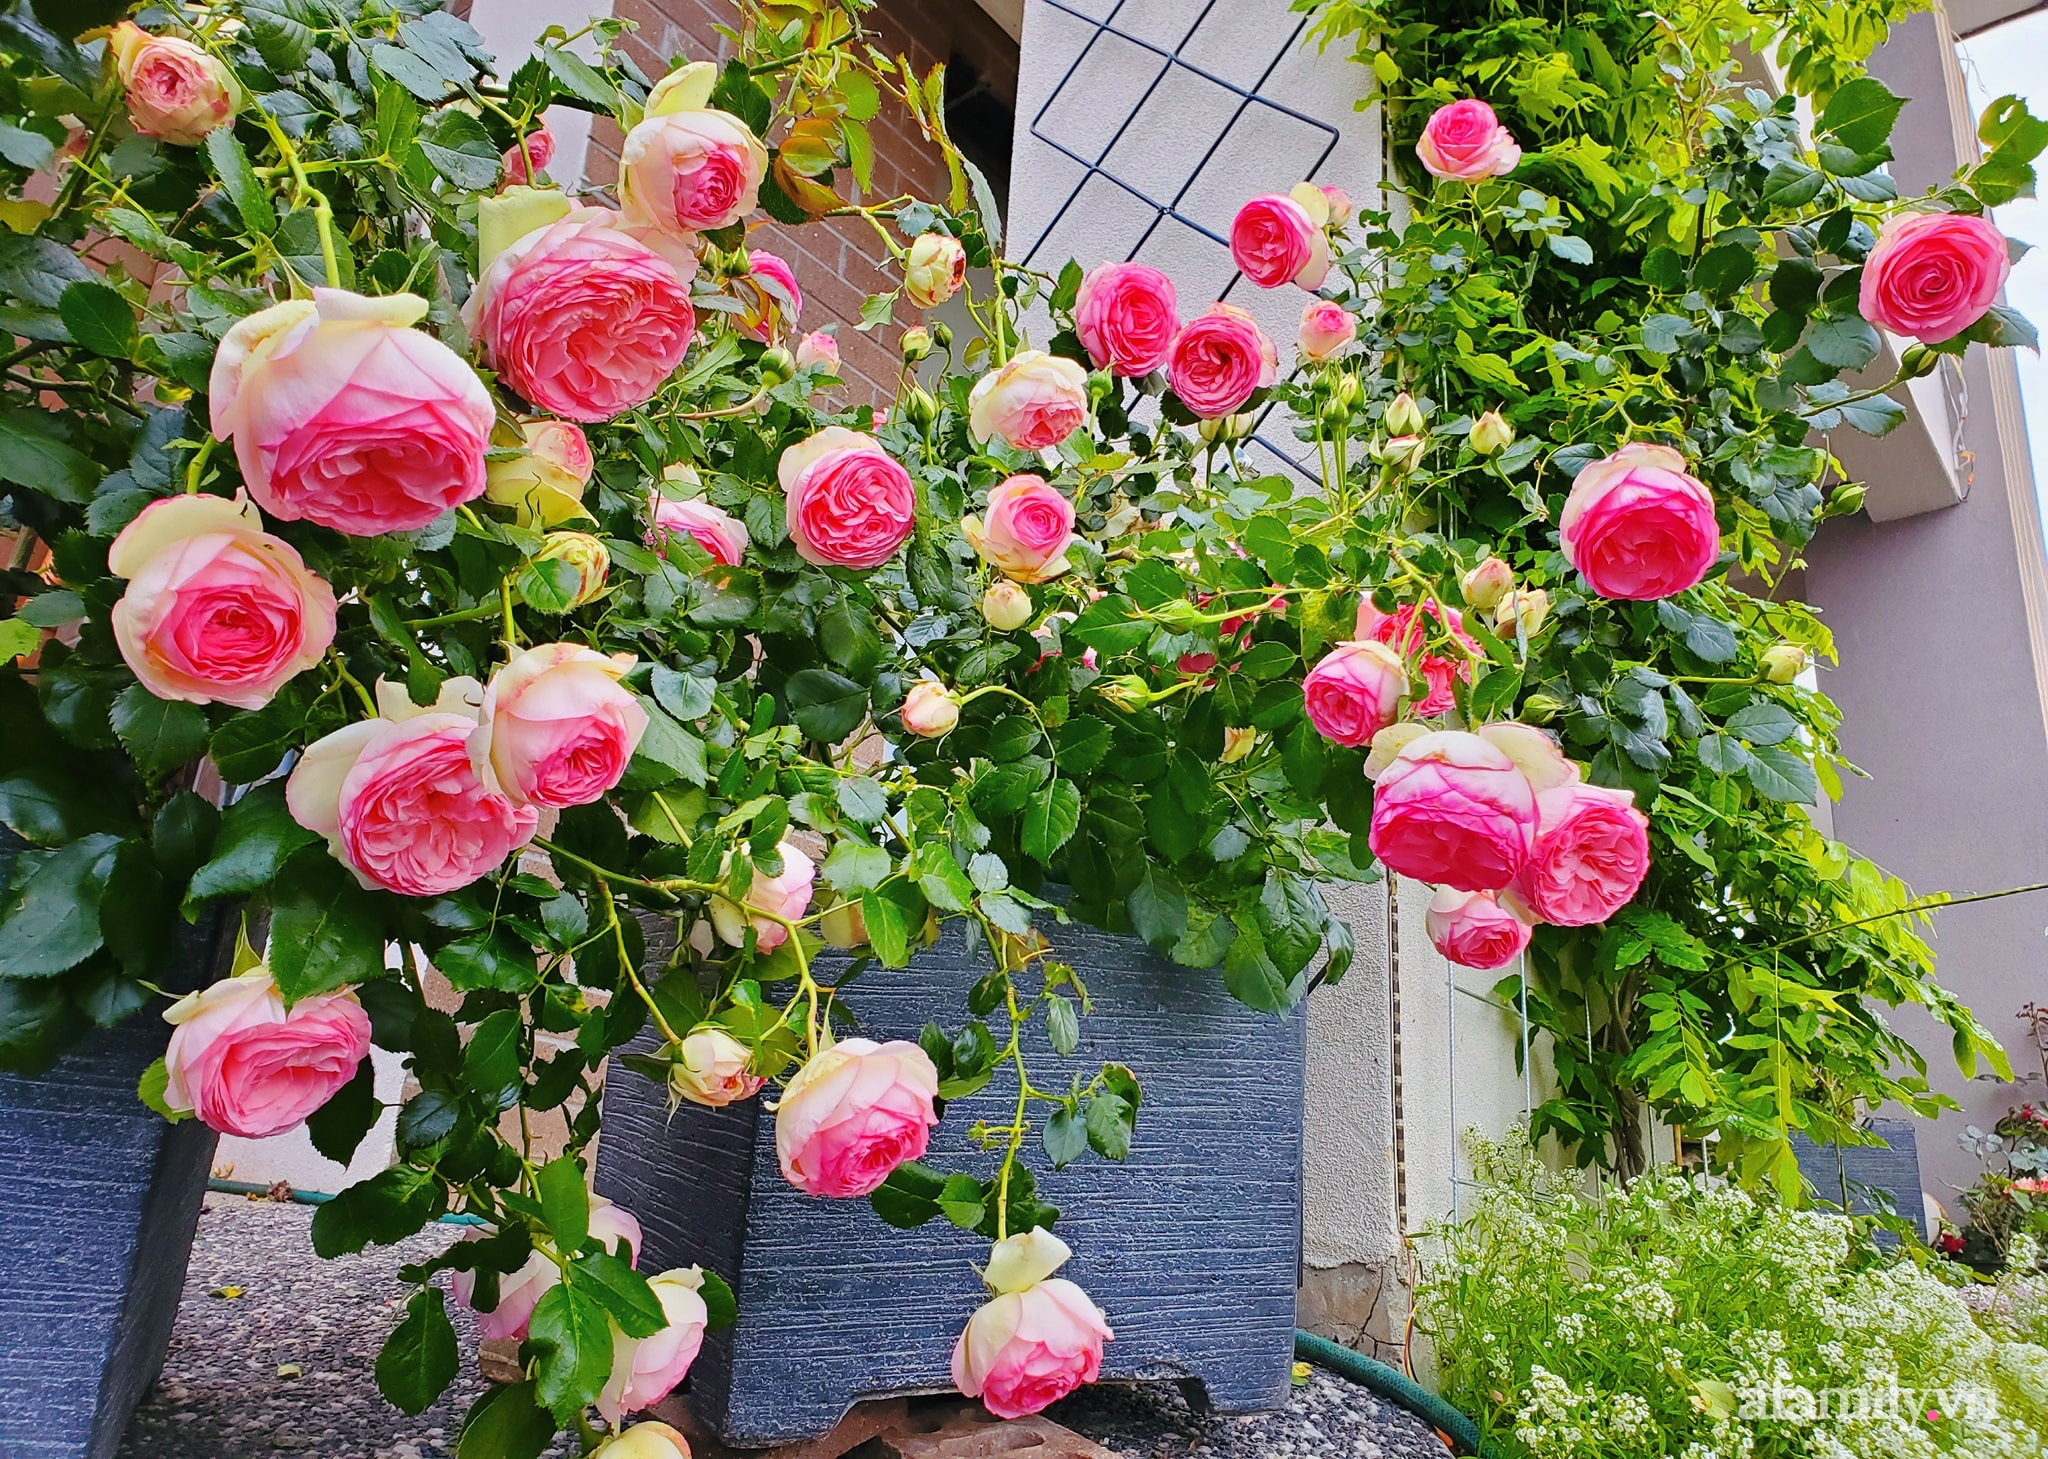 Vườn hồng 250m² ngát hương rực rỡ sắc màu đẹp như cổ tích của mẹ Việt ở Úc - Ảnh 10.